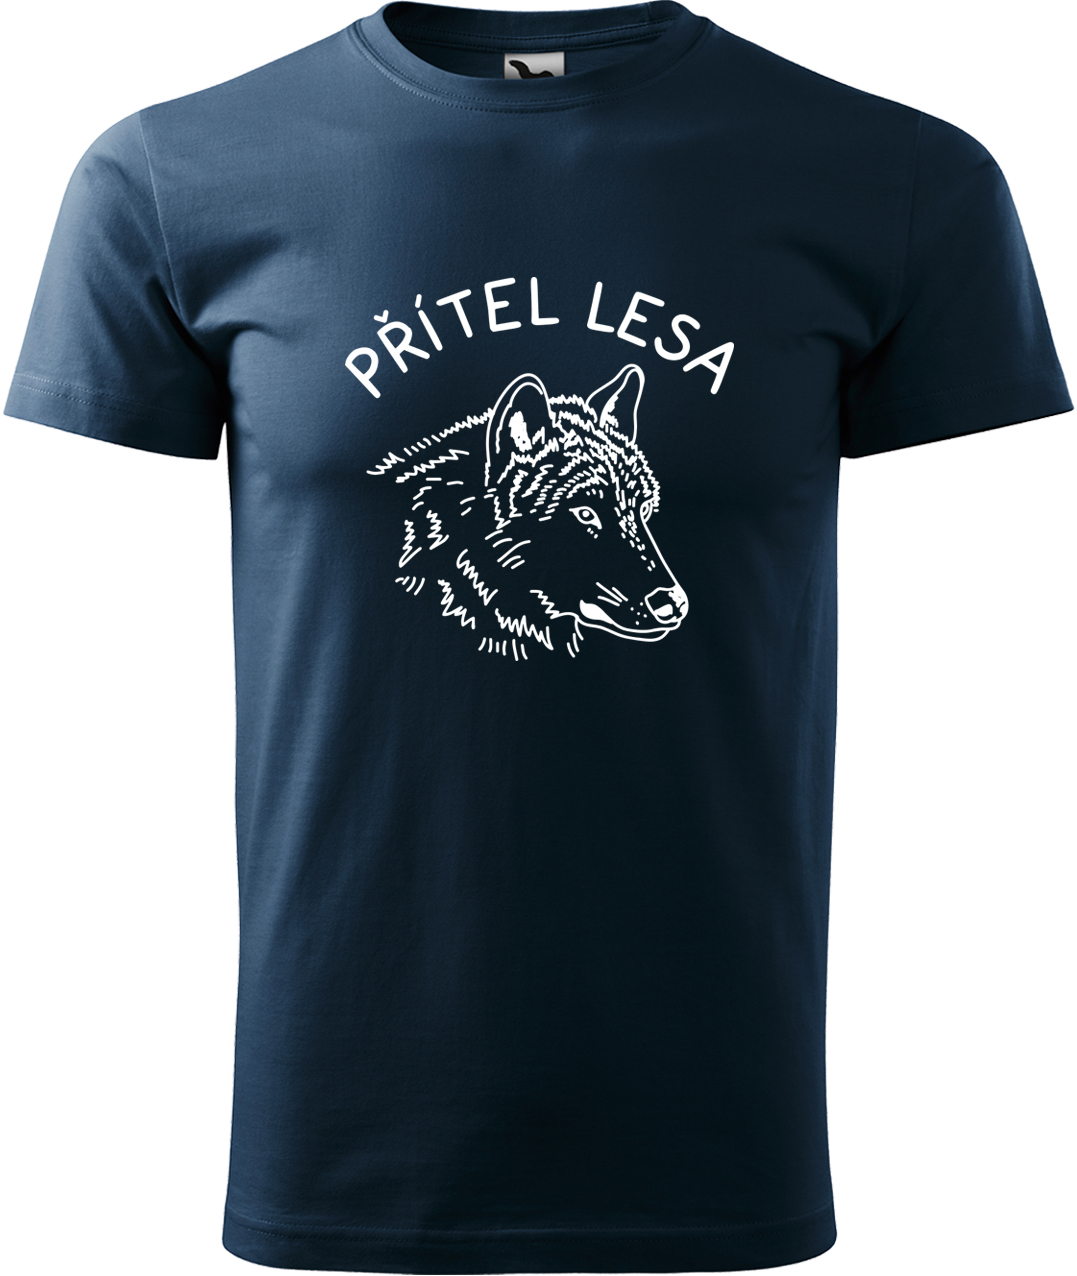 Pánské tričko s vlkem - Přítel lesa Velikost: XL, Barva: Námořní modrá (02), Střih: pánský